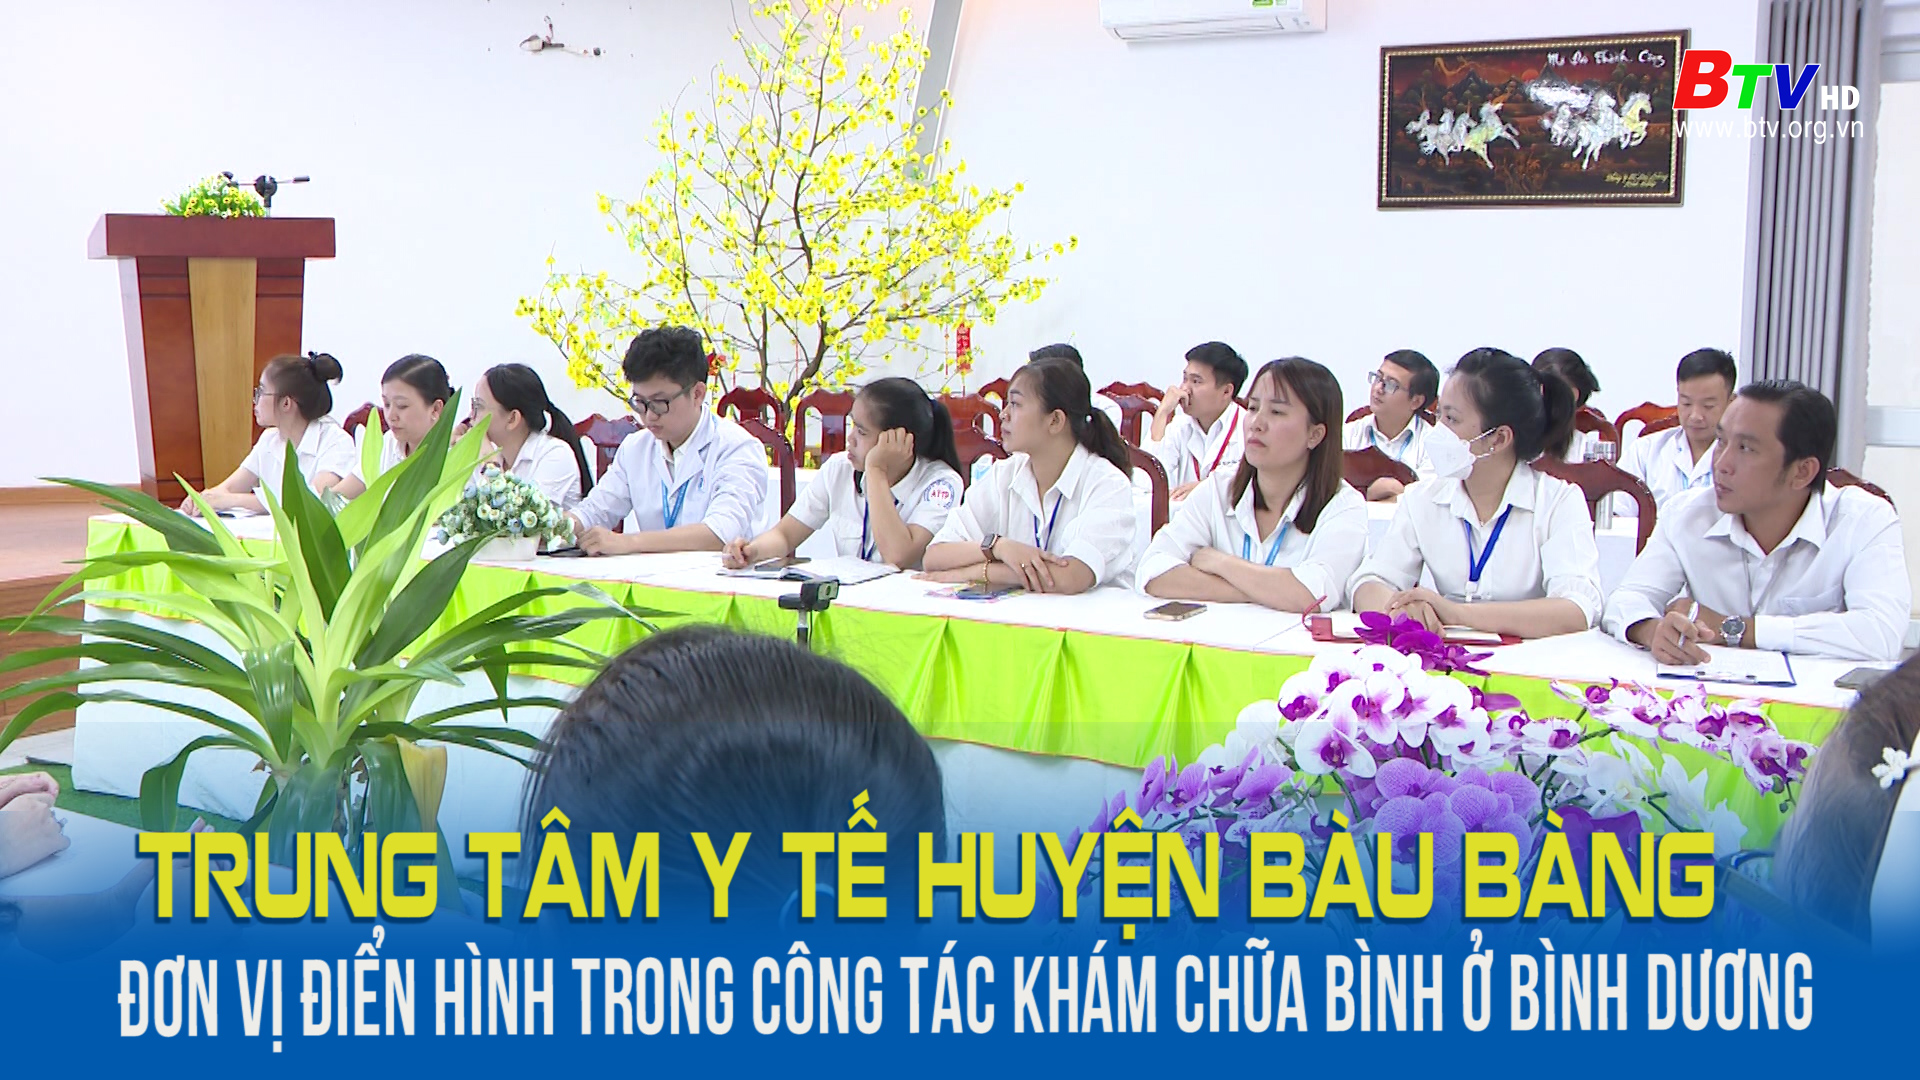 Trung tâm y tế huyện Bàu Bàng đơn vị điển hình trong công tác khám chữa bệnh ở Bình Dương